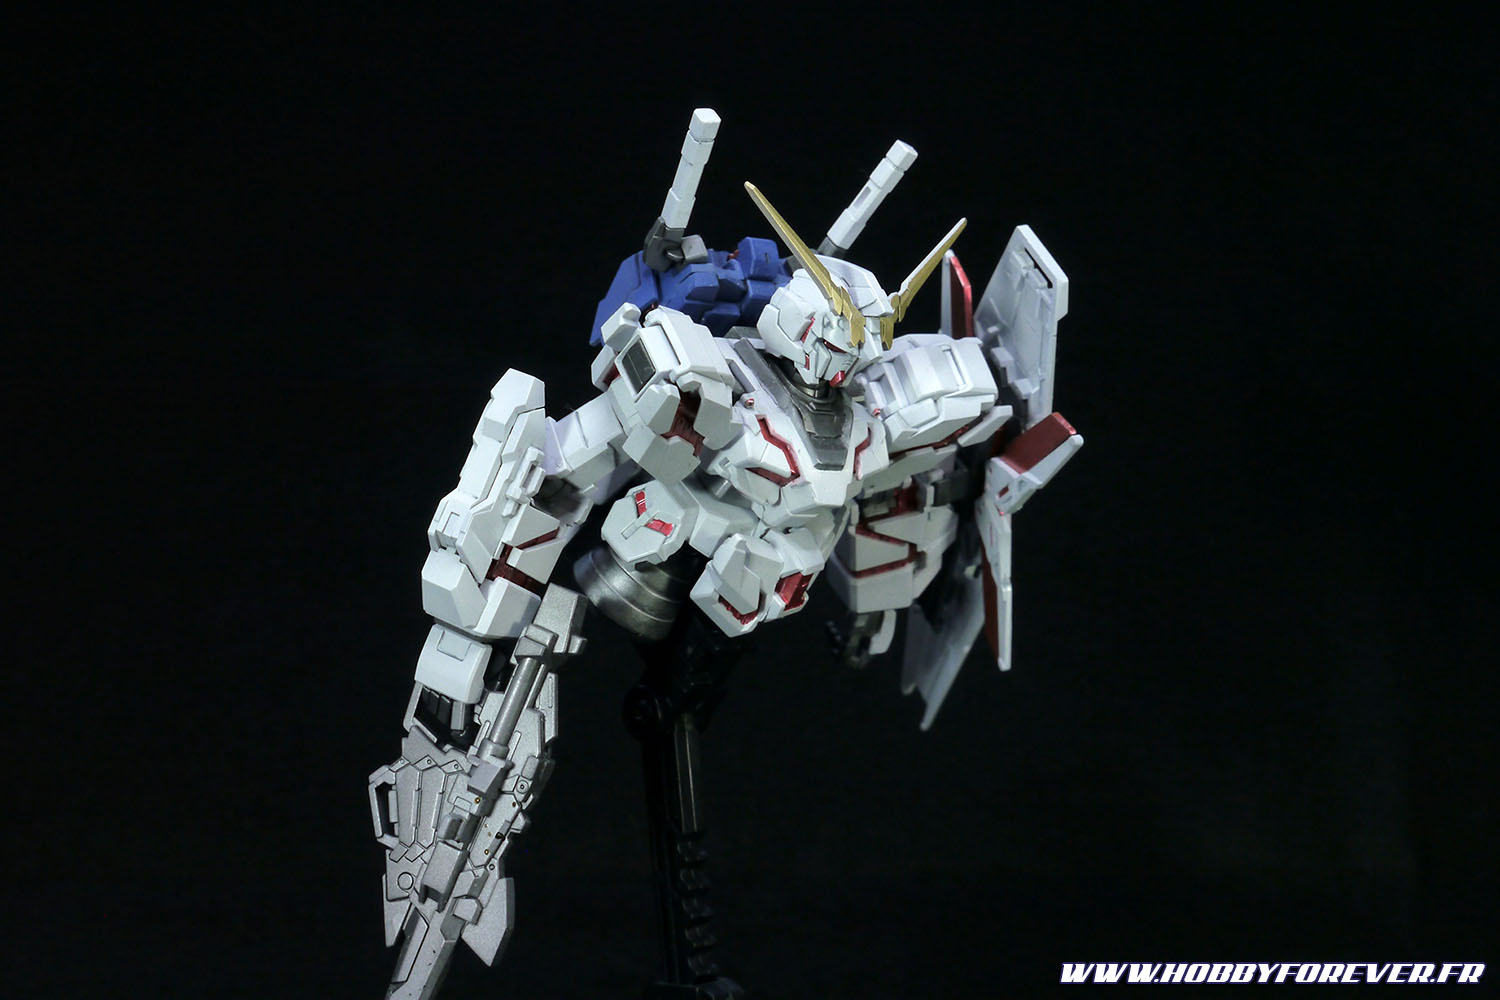 Kiricorn Gundam Bst mode